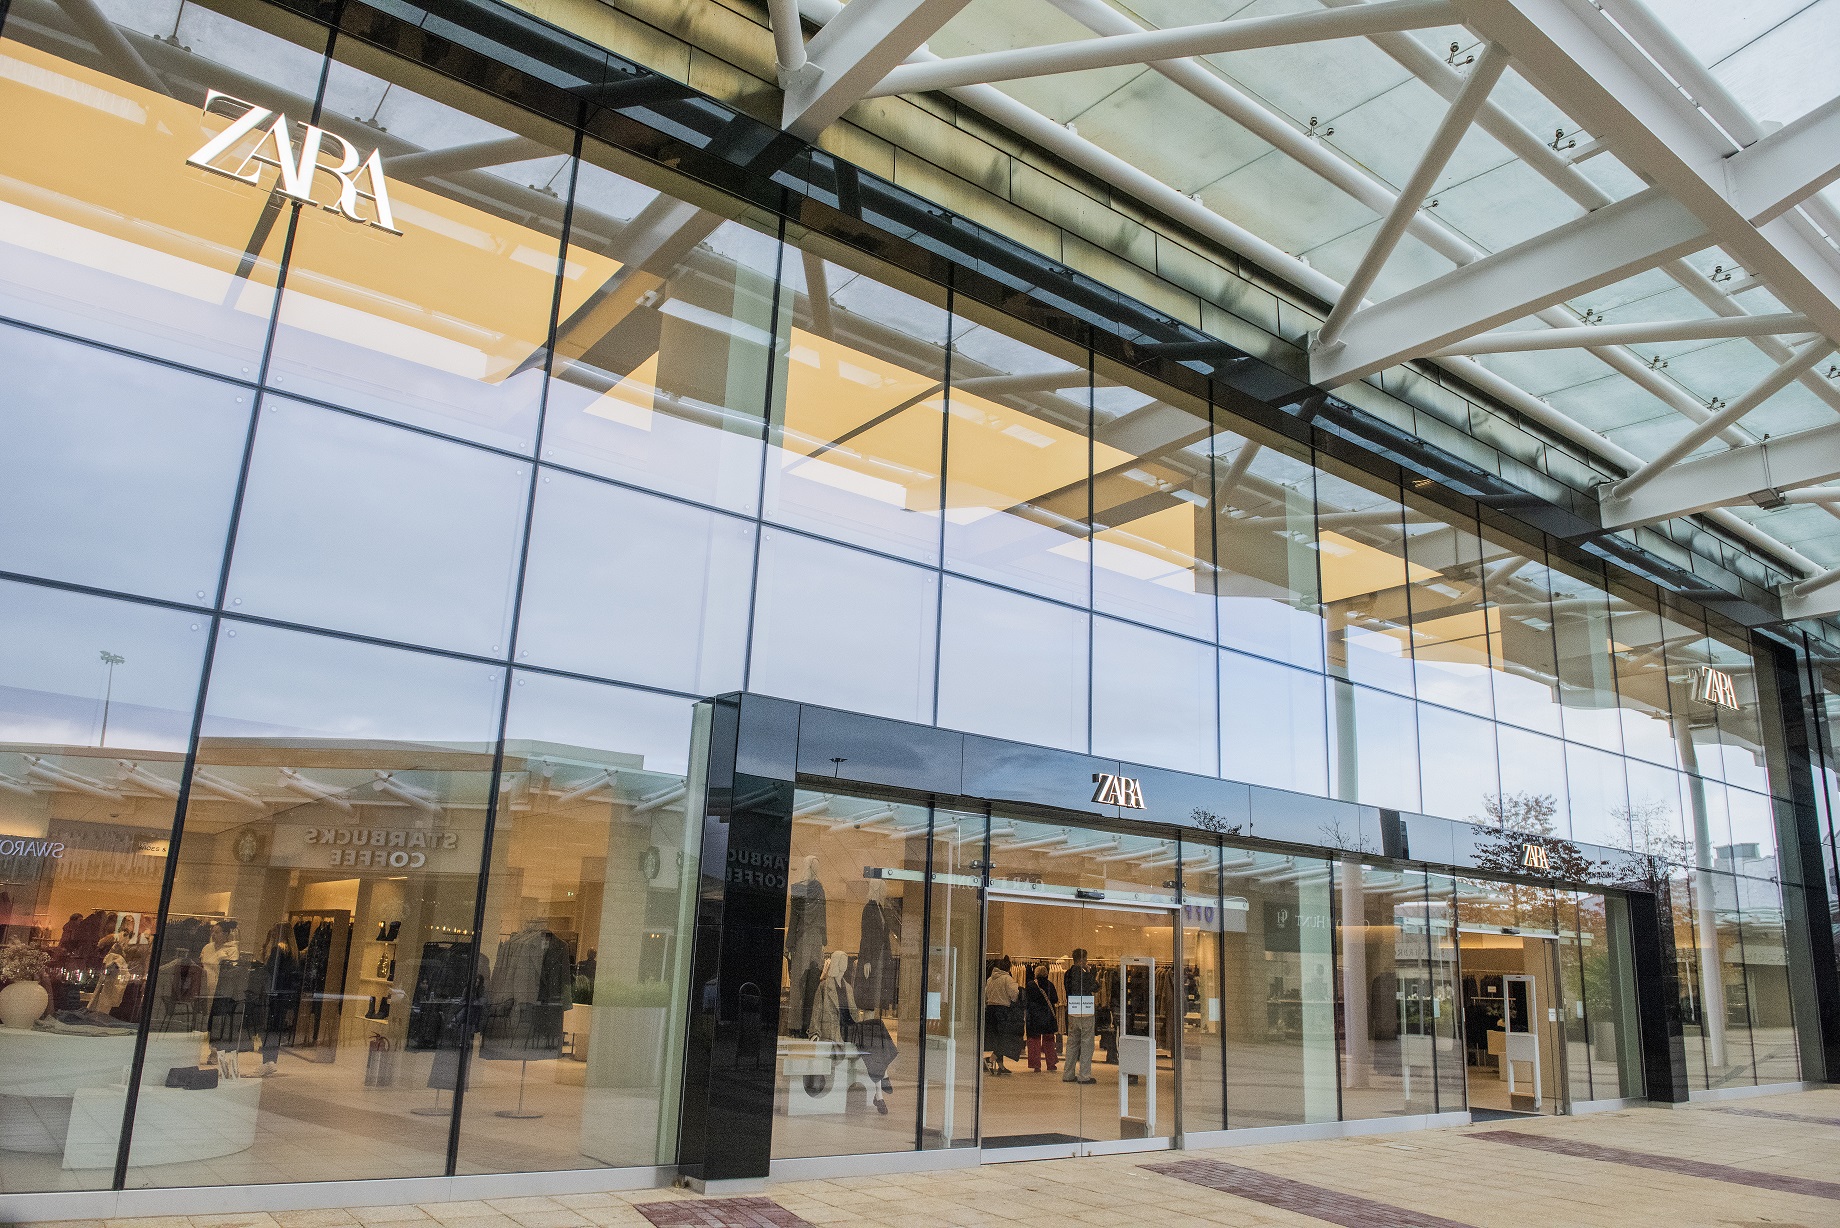 Zara unveils its biggest Scottish store at Glasgow Fort